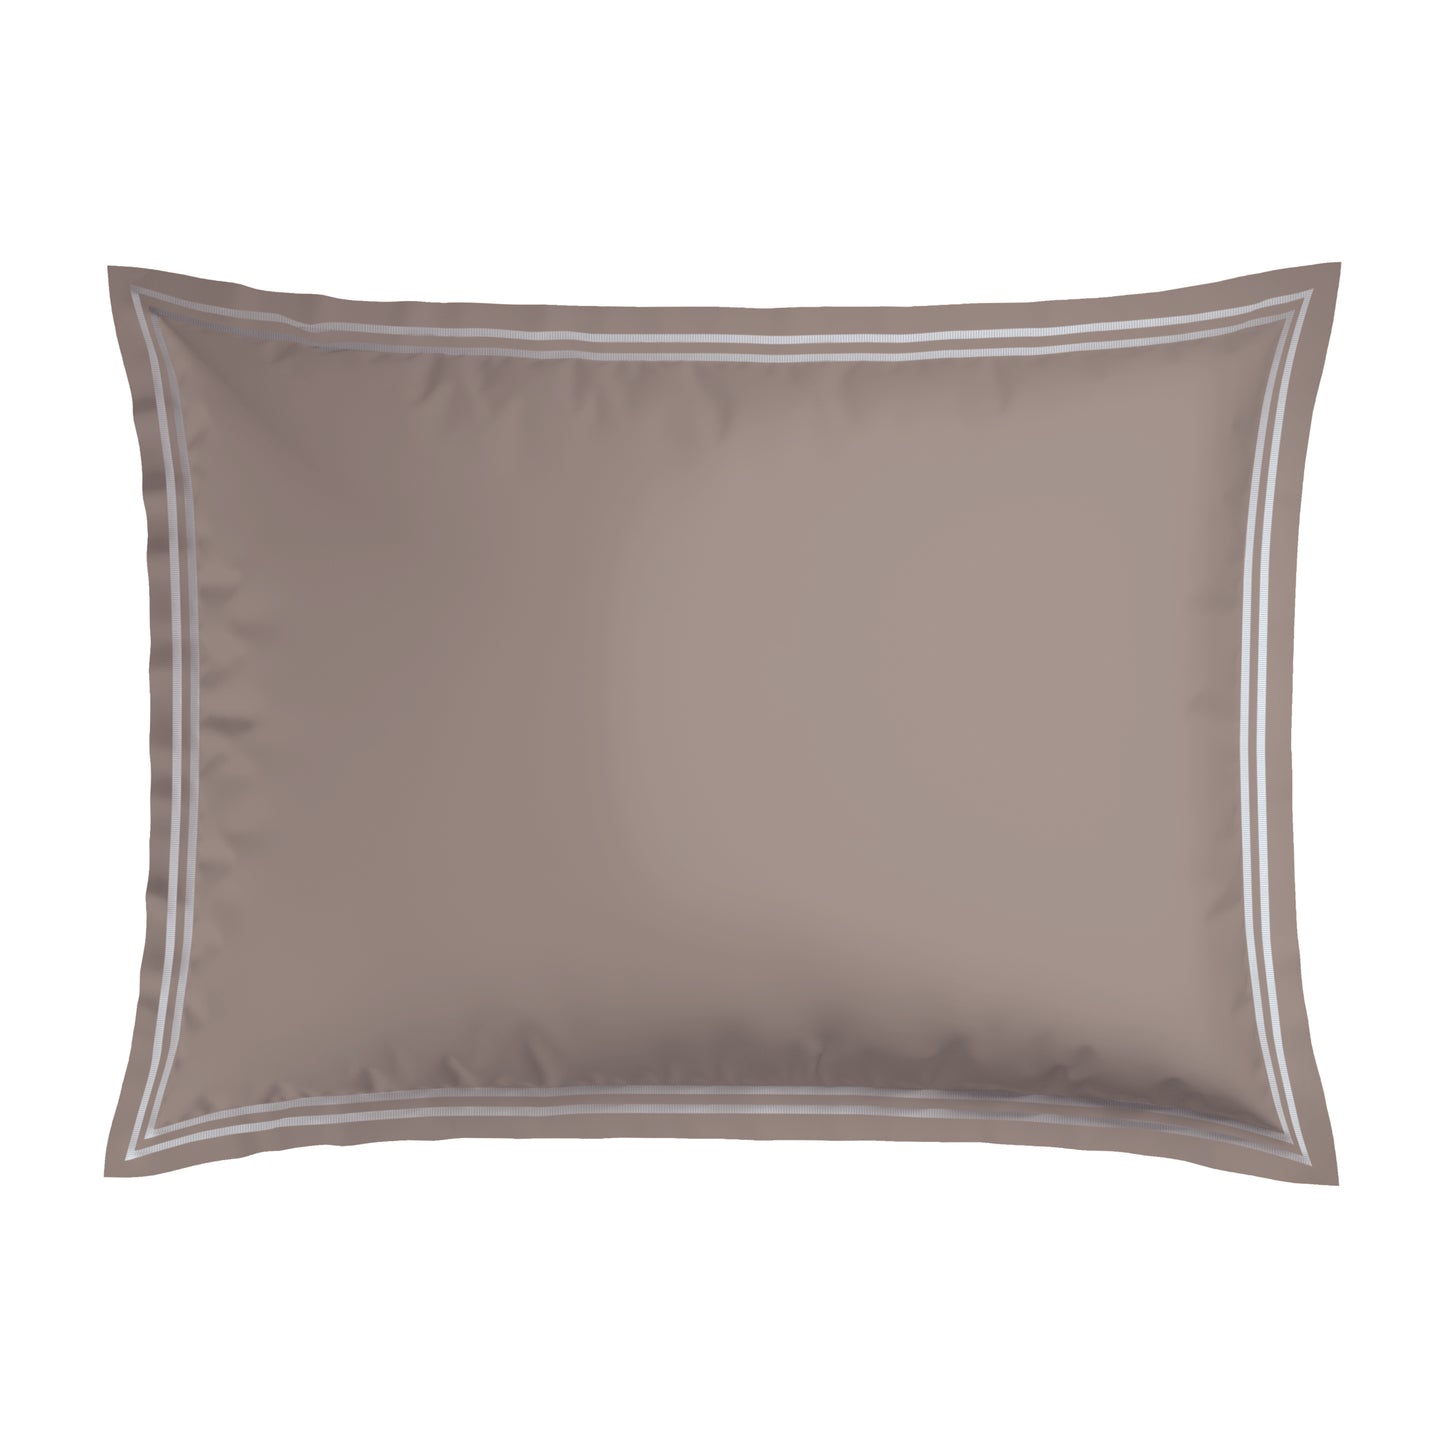 Pillowcase(s) cotton satin - Nice Taupe / White